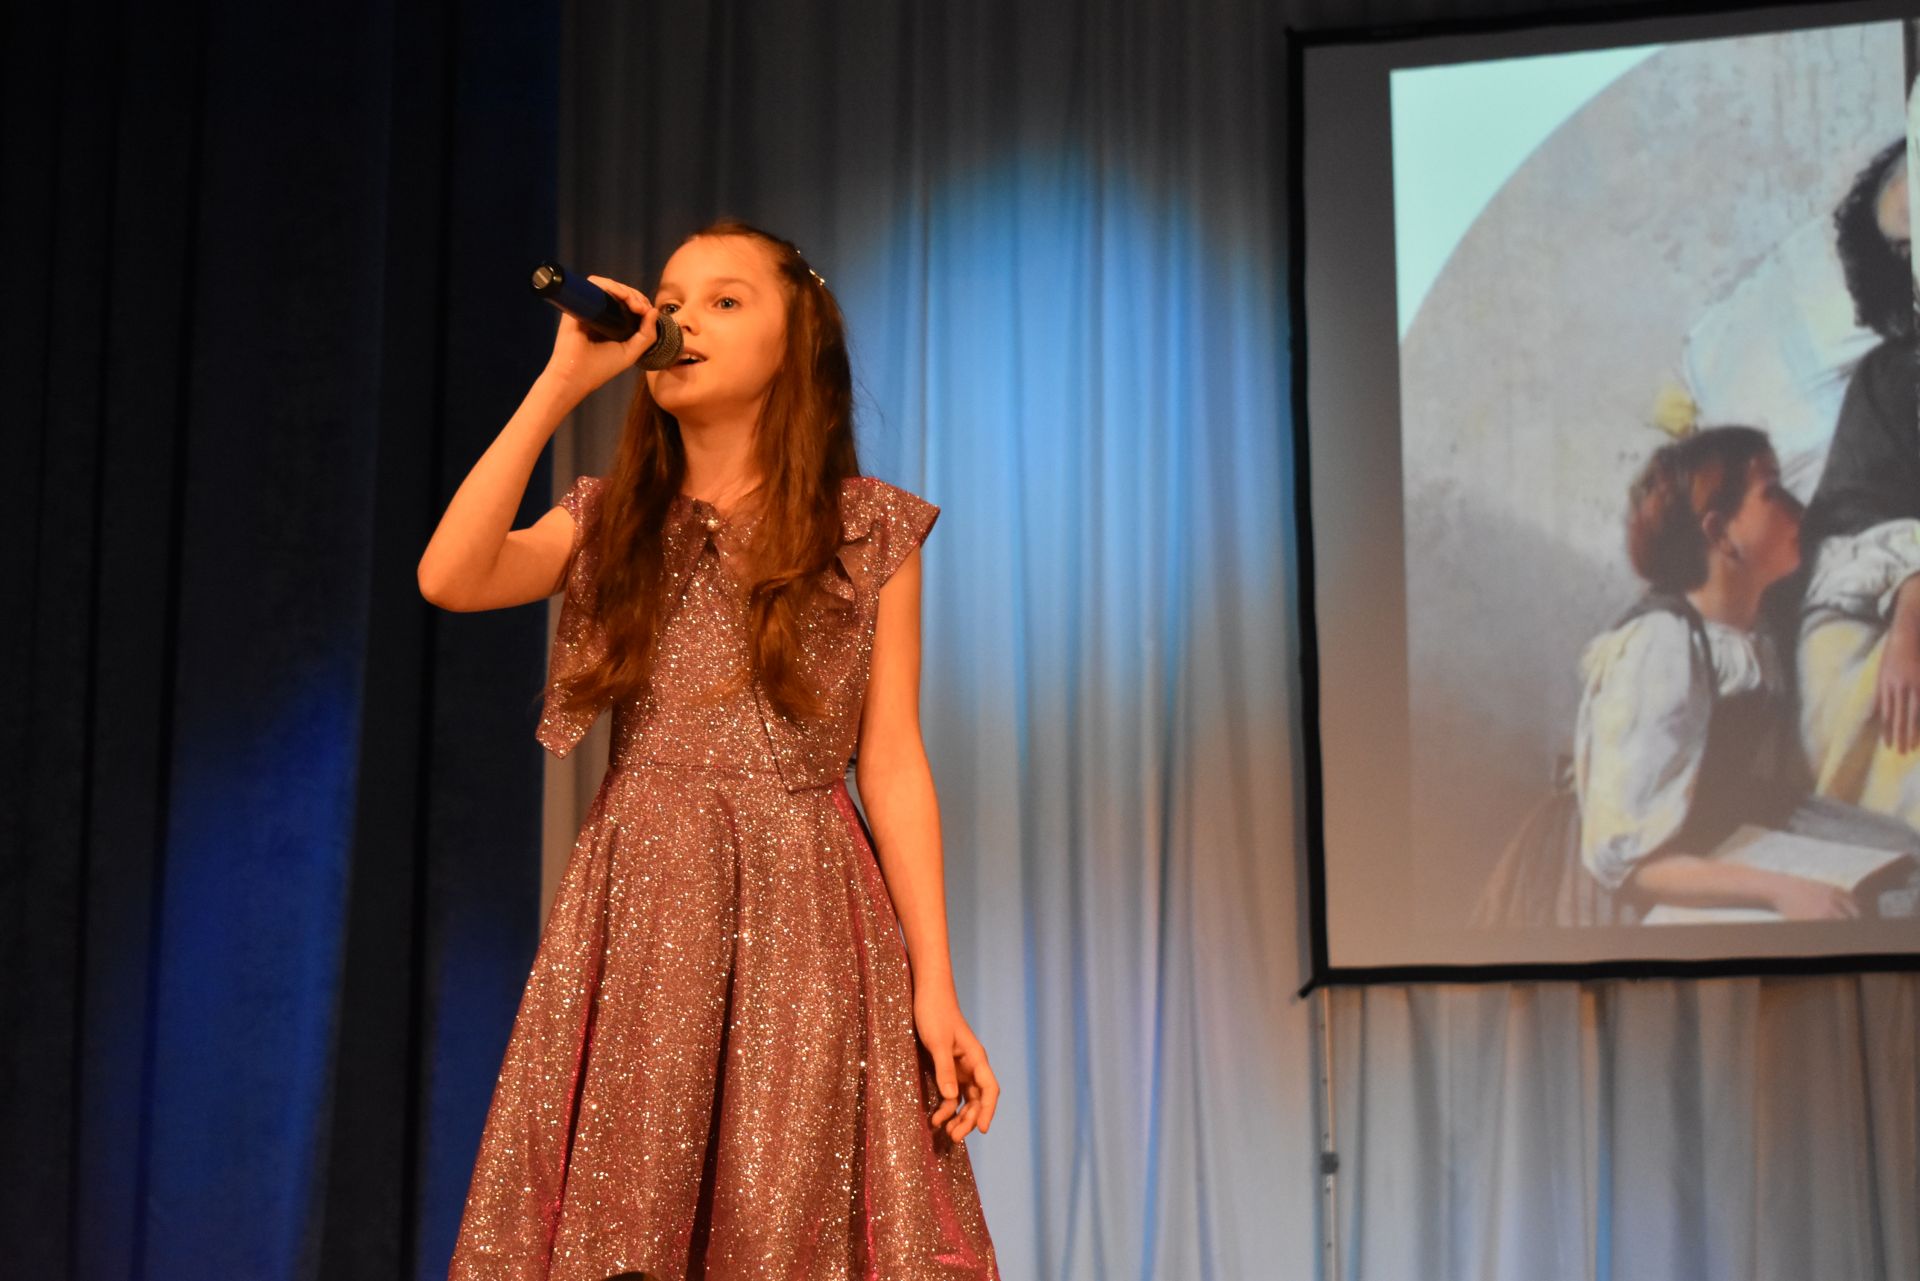 Незабываемый концерт подарили юные таланты ДШИ верхнеуслонцам (Фоторепортаж)